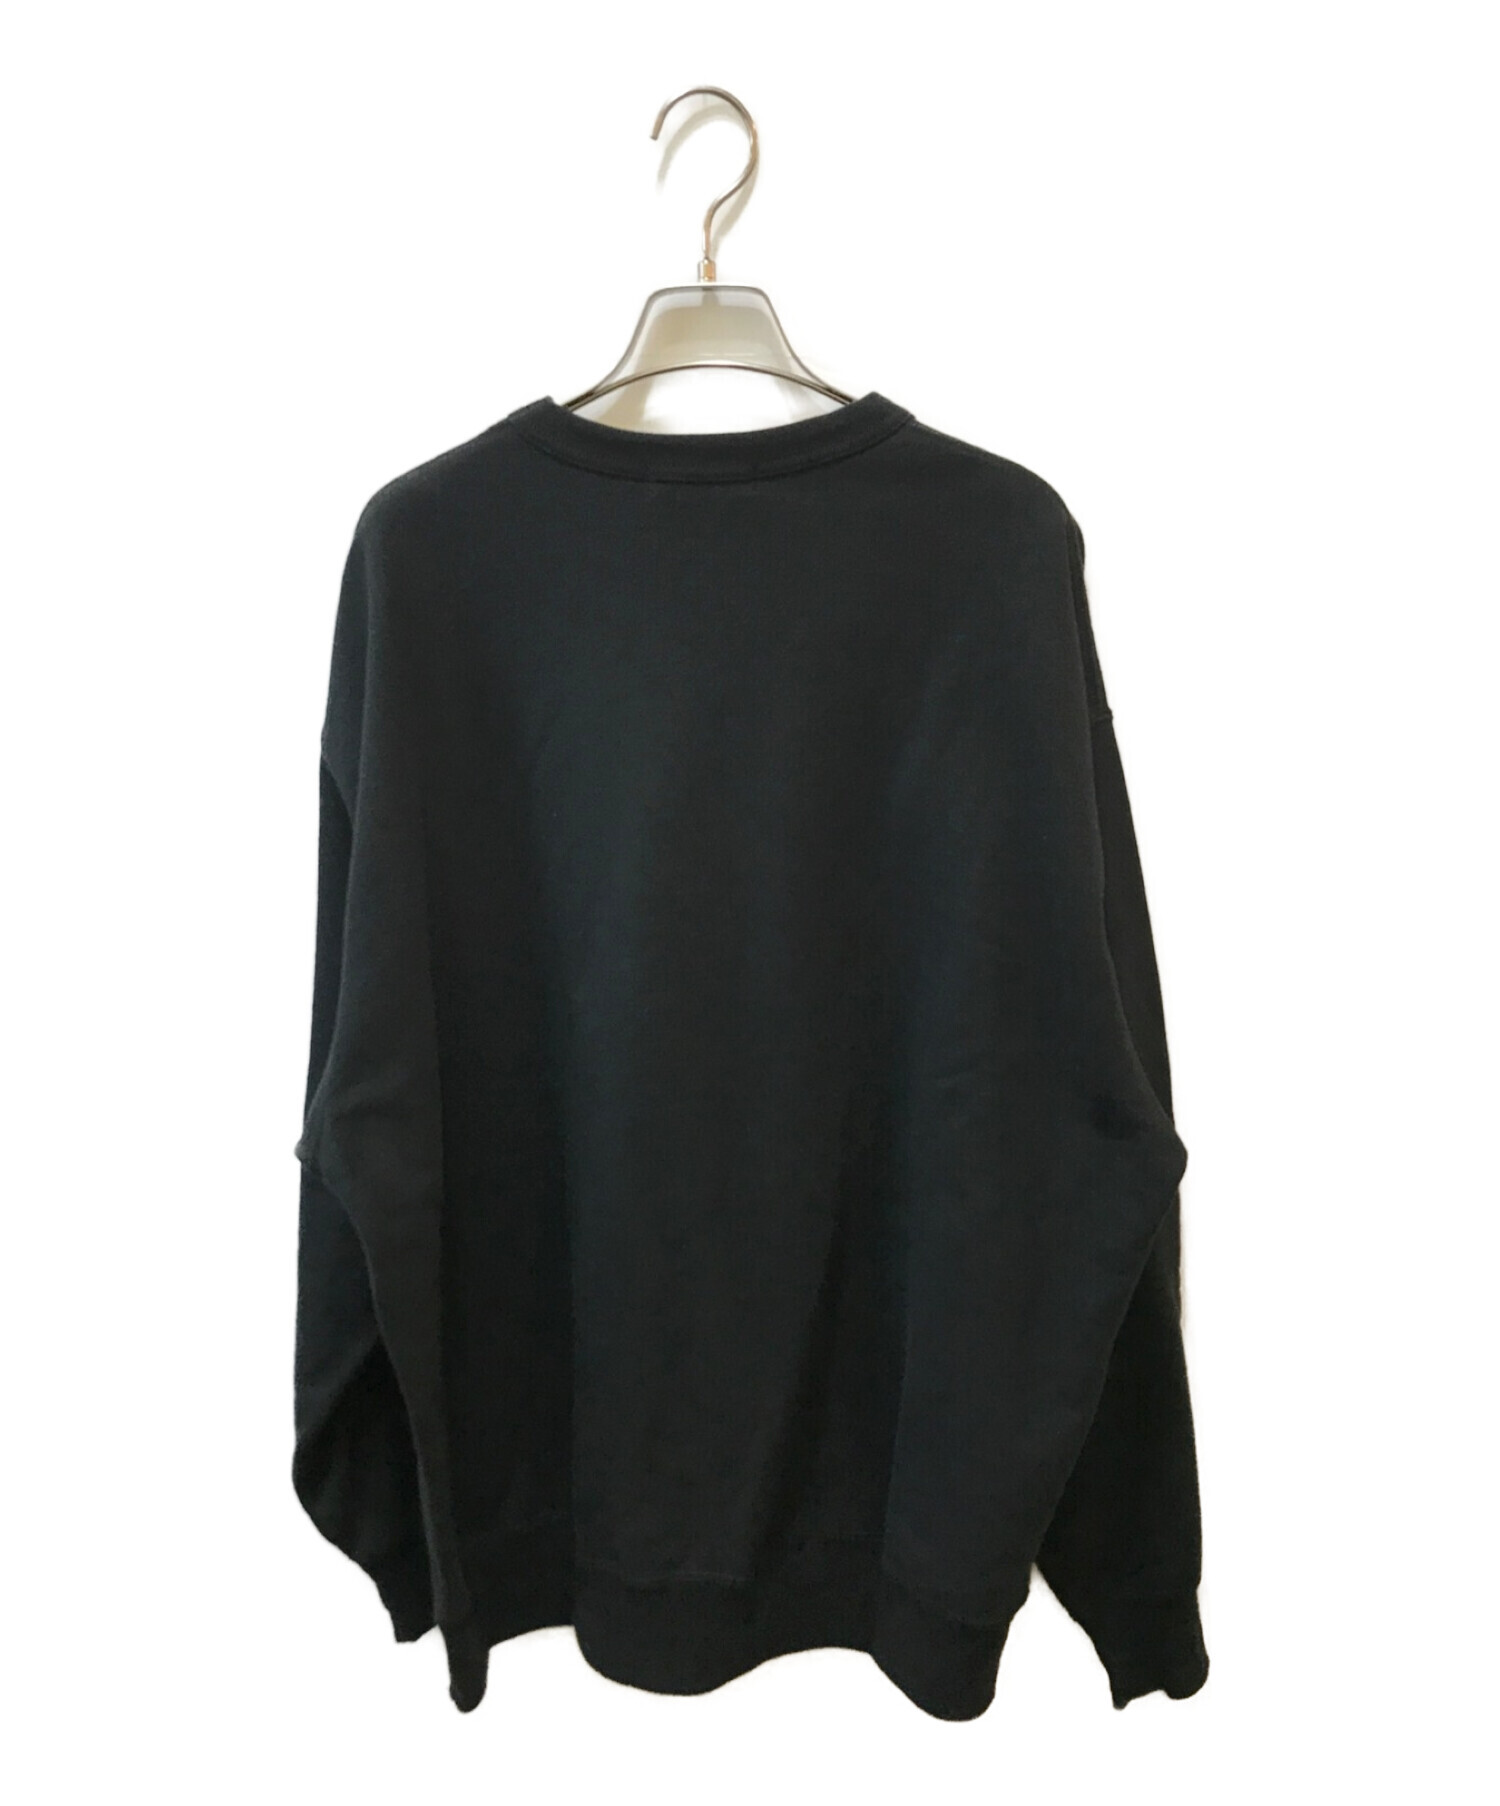 COOTIE PRODUCTIONS (クーティープロダクツ) Crewneck Sweatshirt(クルーネックスウェットシャツ) ブラック  サイズ:M 未使用品